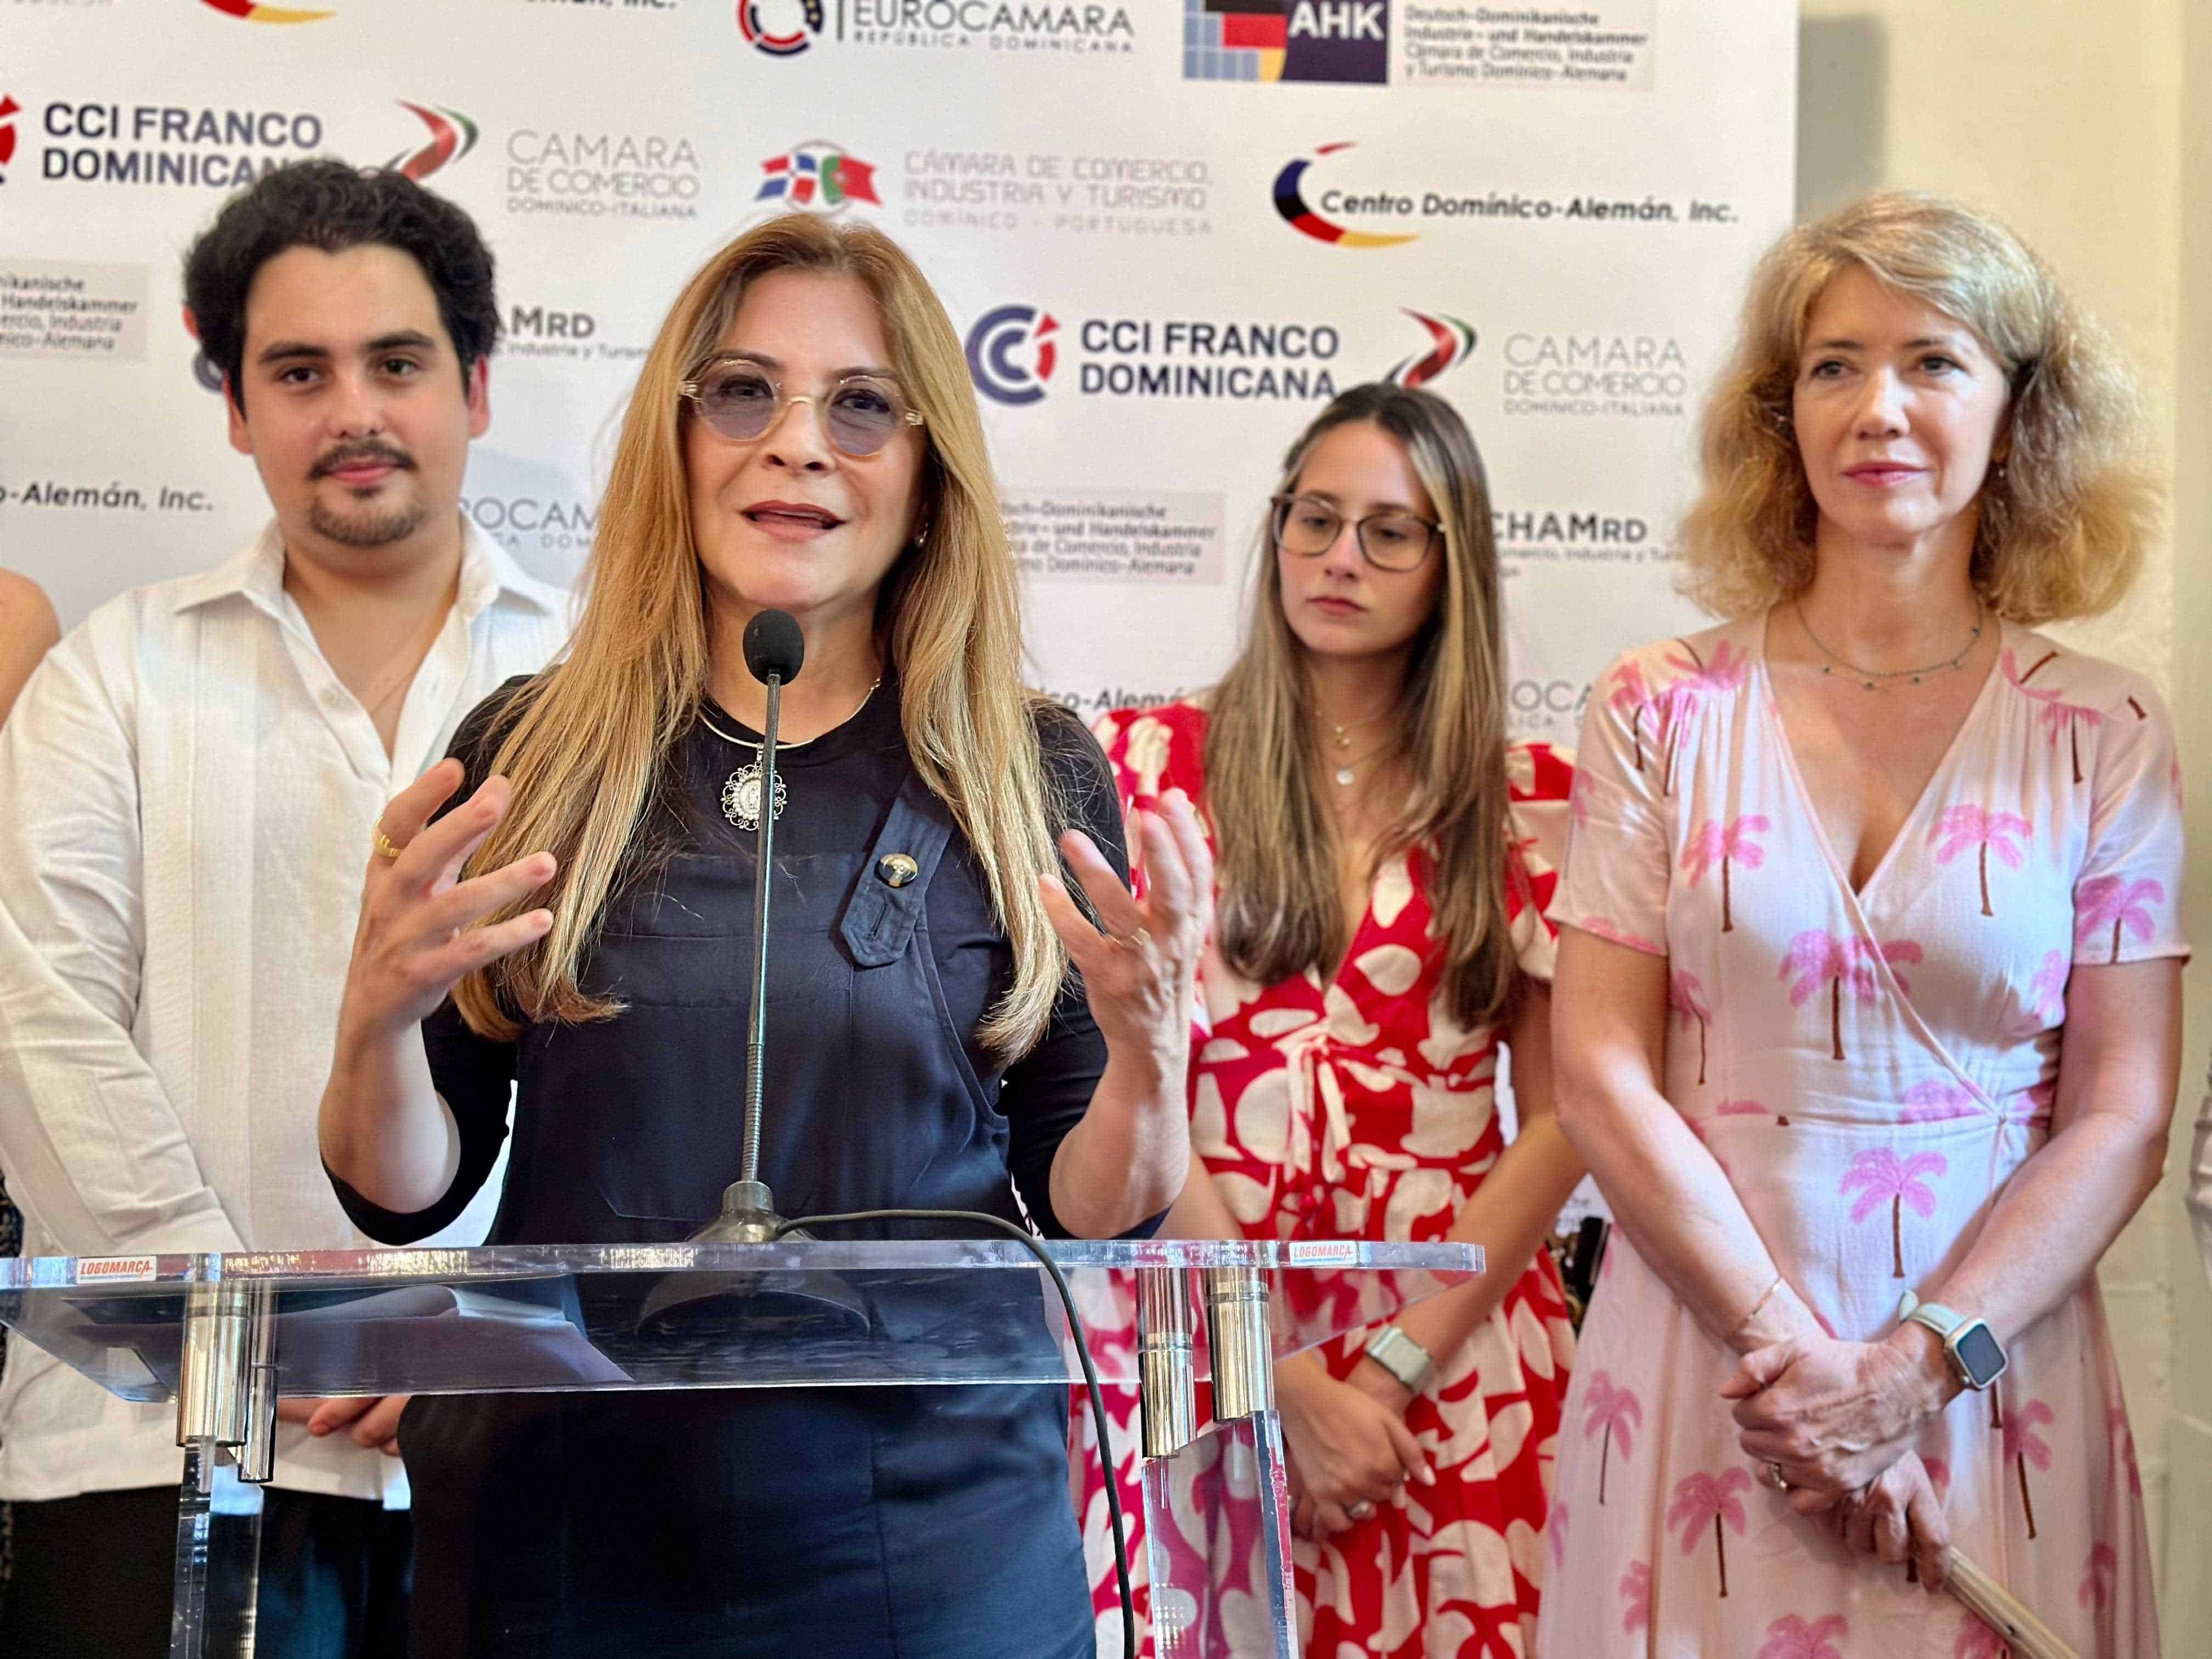 La alcaldesa del Distrito Nacional, Carolina Mejía, dio unas palabras.